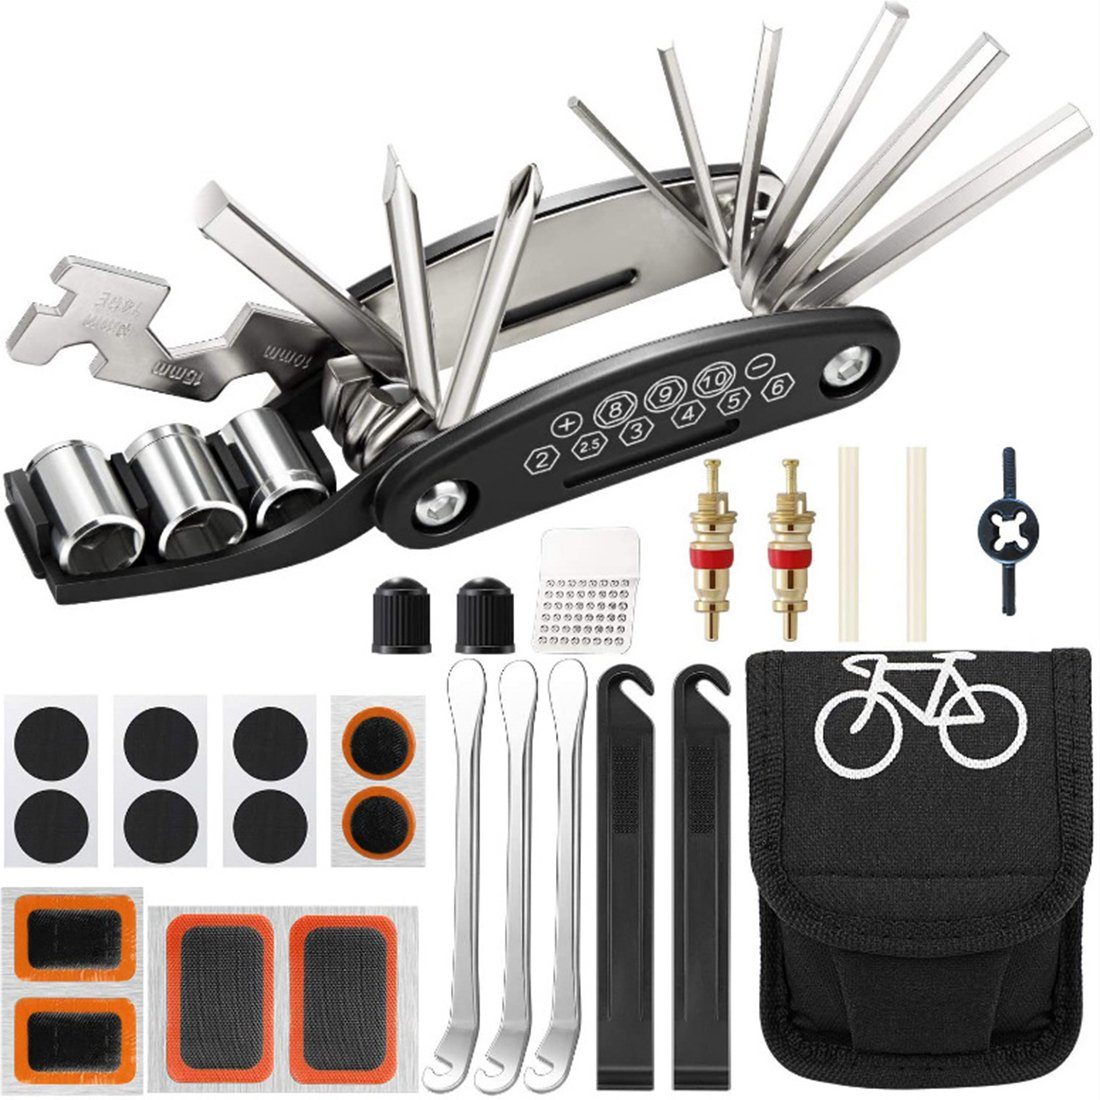 mit Fahrrad-Reparaturset Fahrrad Fahrradflickzeug Tasche für Reparaturset Haiaveng 1 Reparatur, Fahrrad-Multitool in Multifunktionswerkzeug 16 Werkzeuge